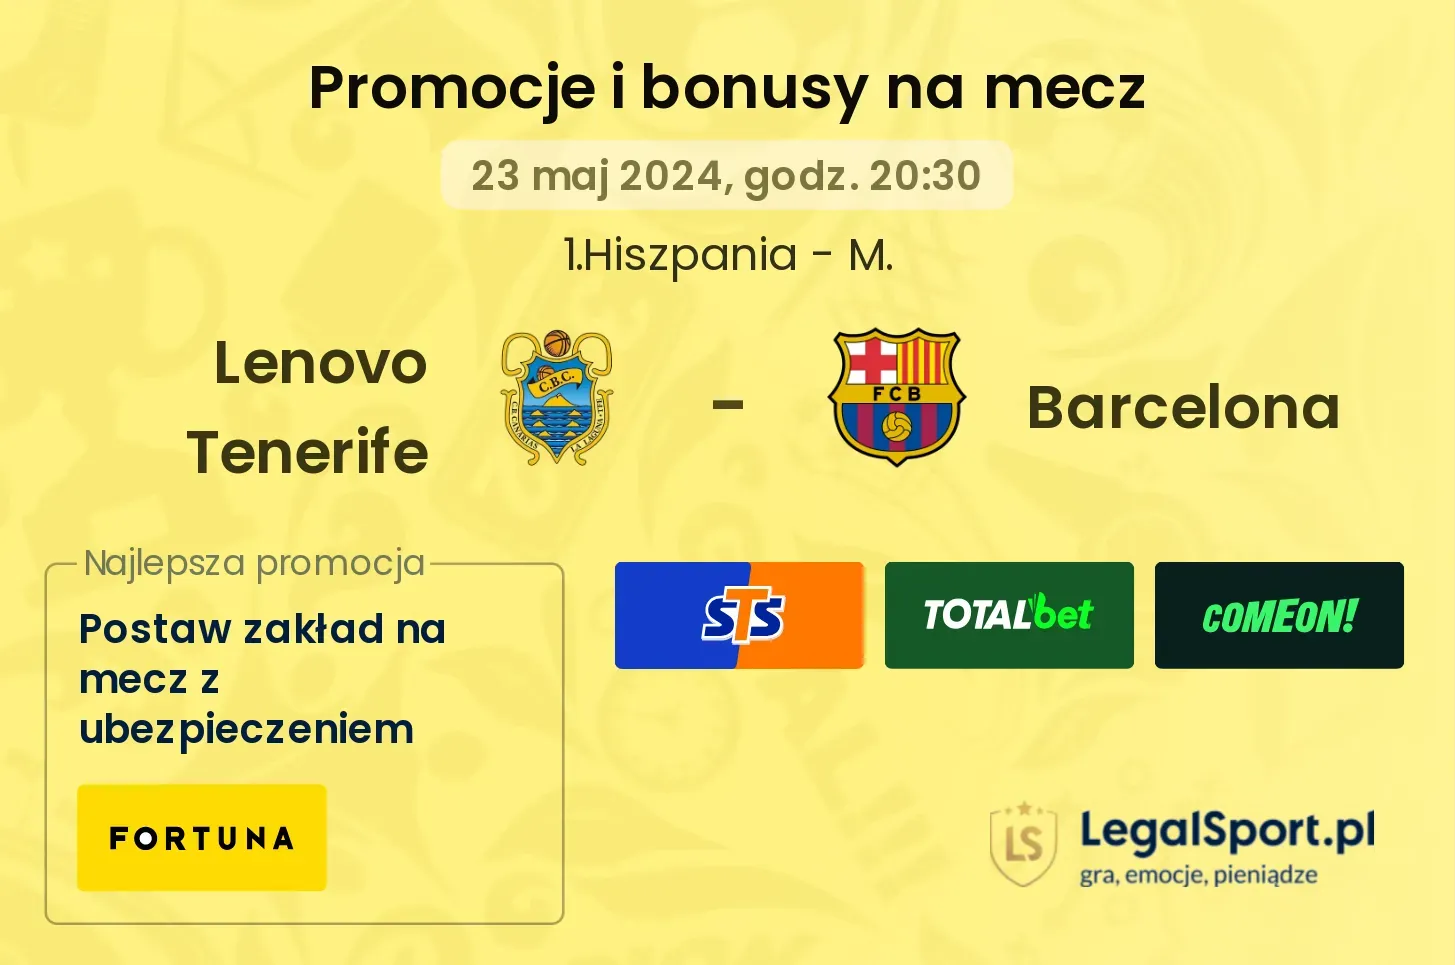 Lenovo Tenerife - Barcelona promocje bonusy na mecz